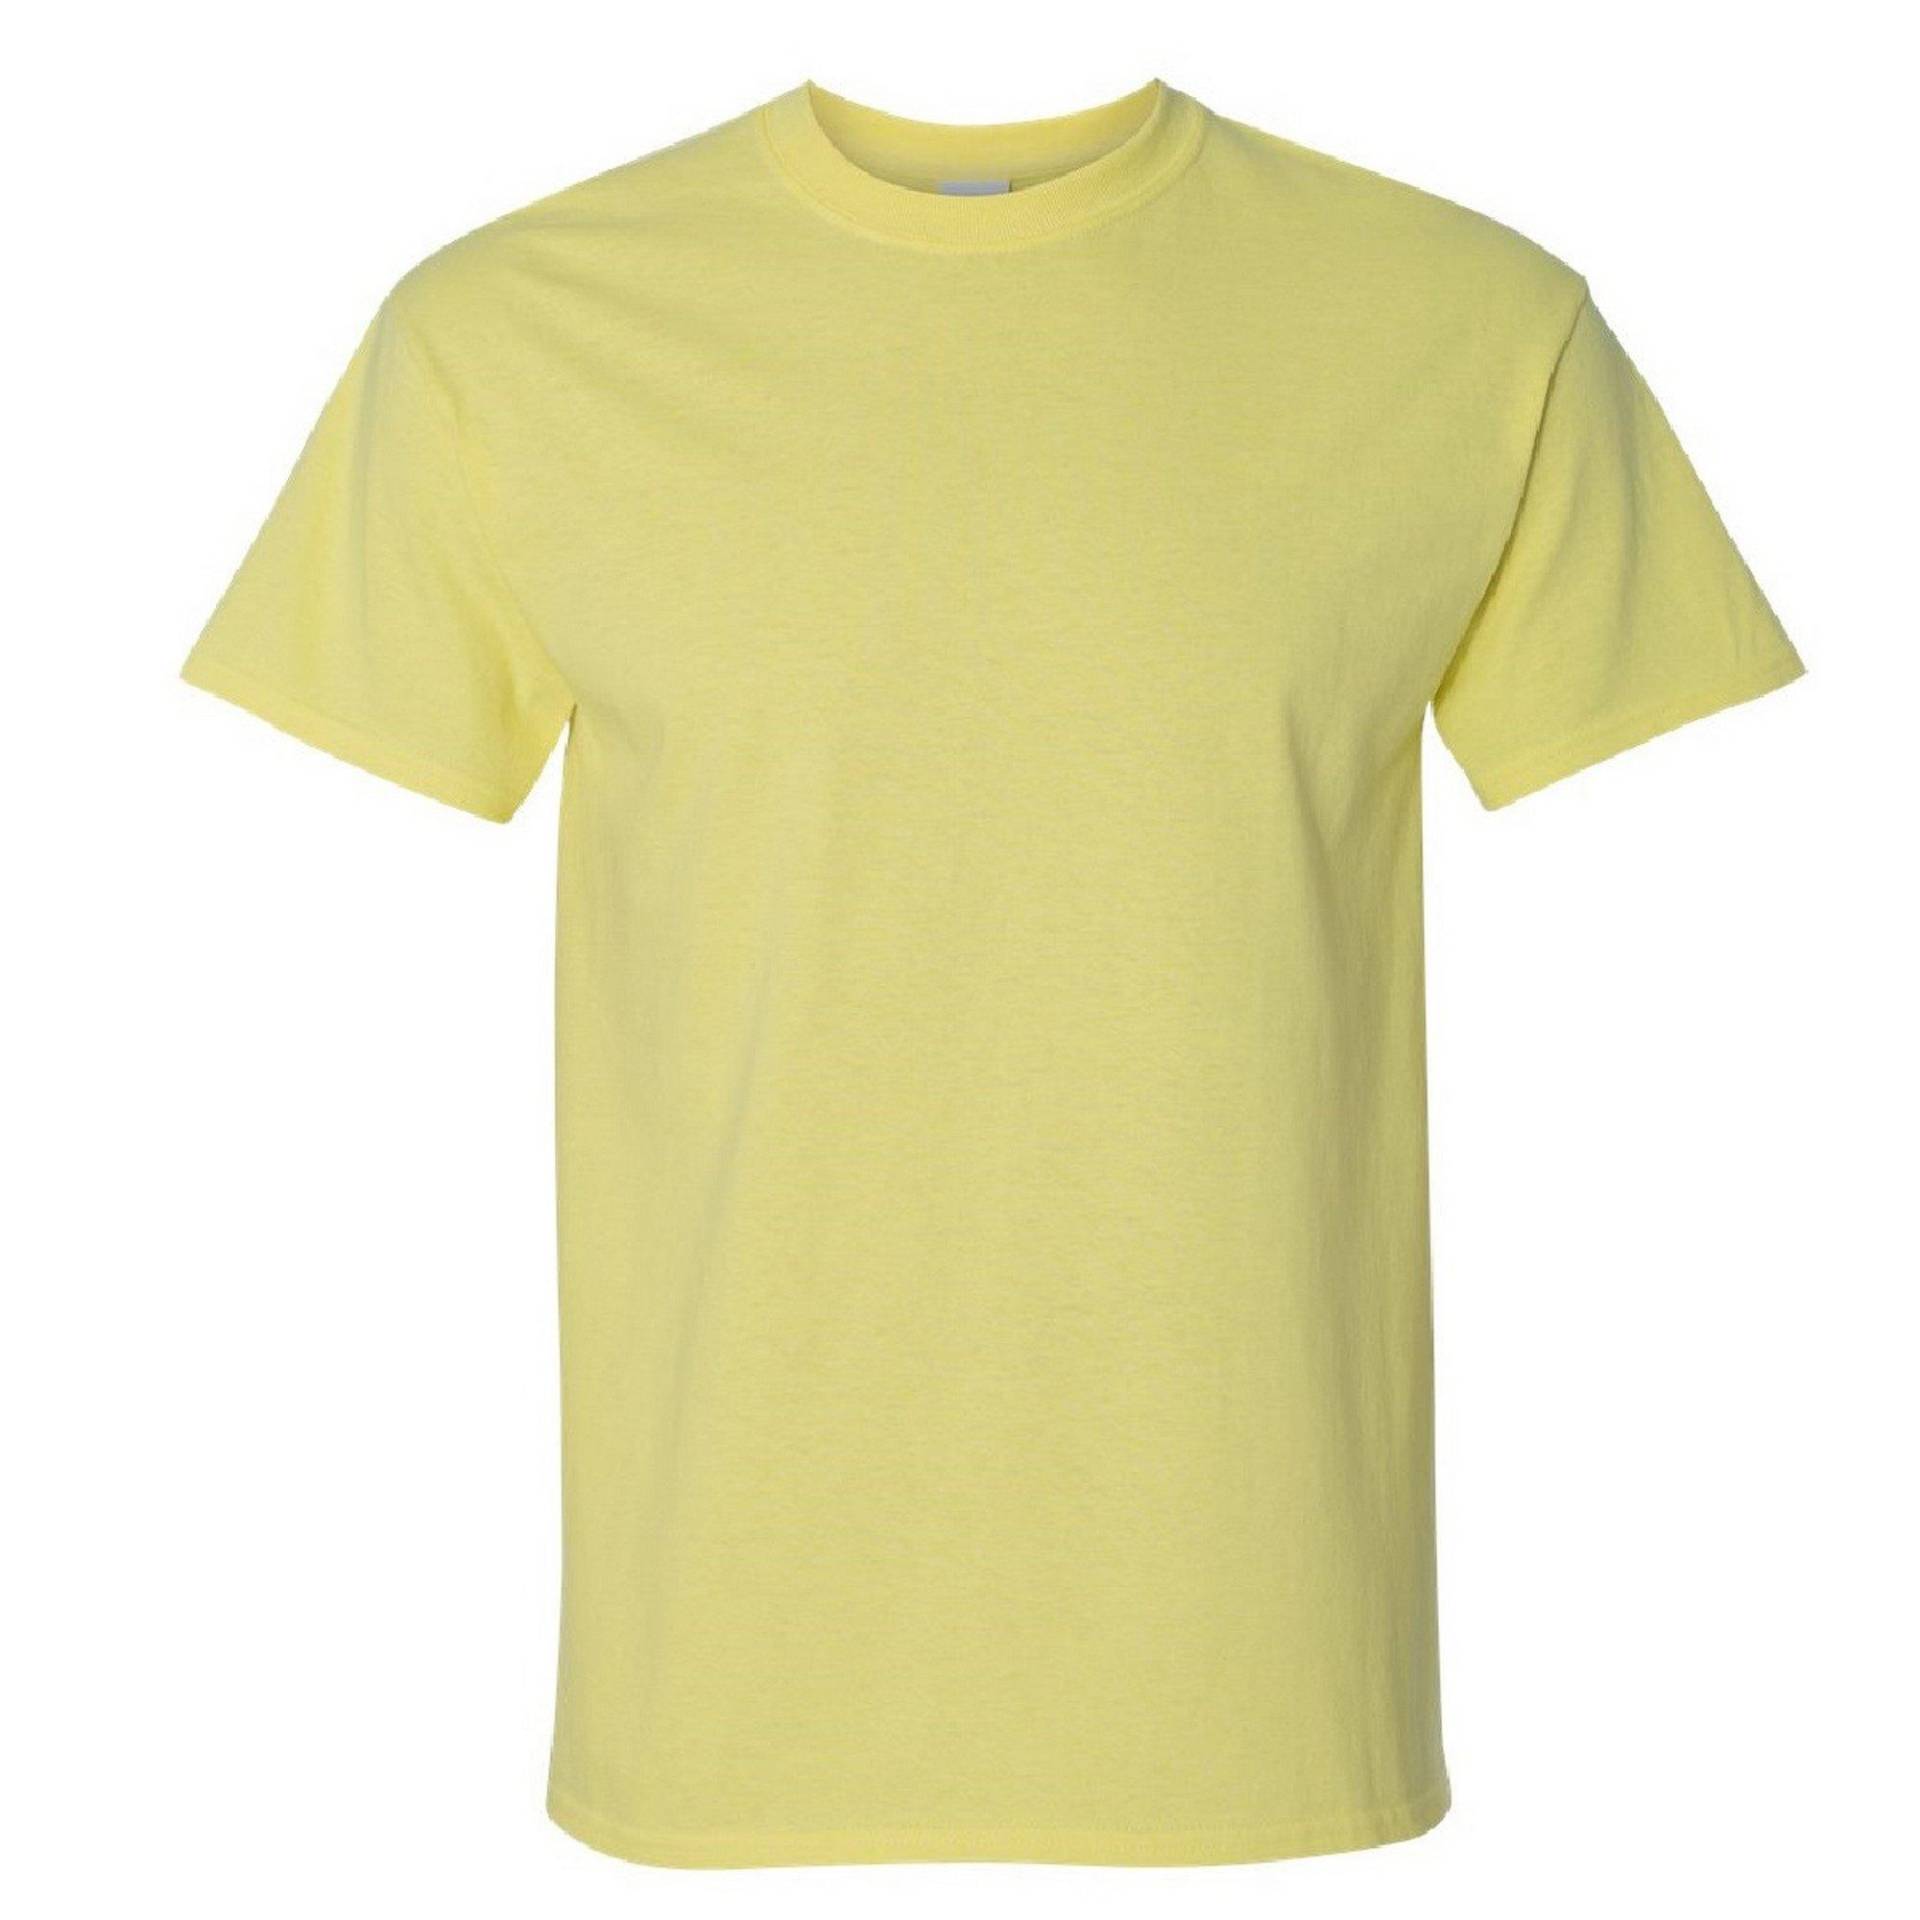 Ultra Tshirt Herren Gelb Bunt S von Gildan